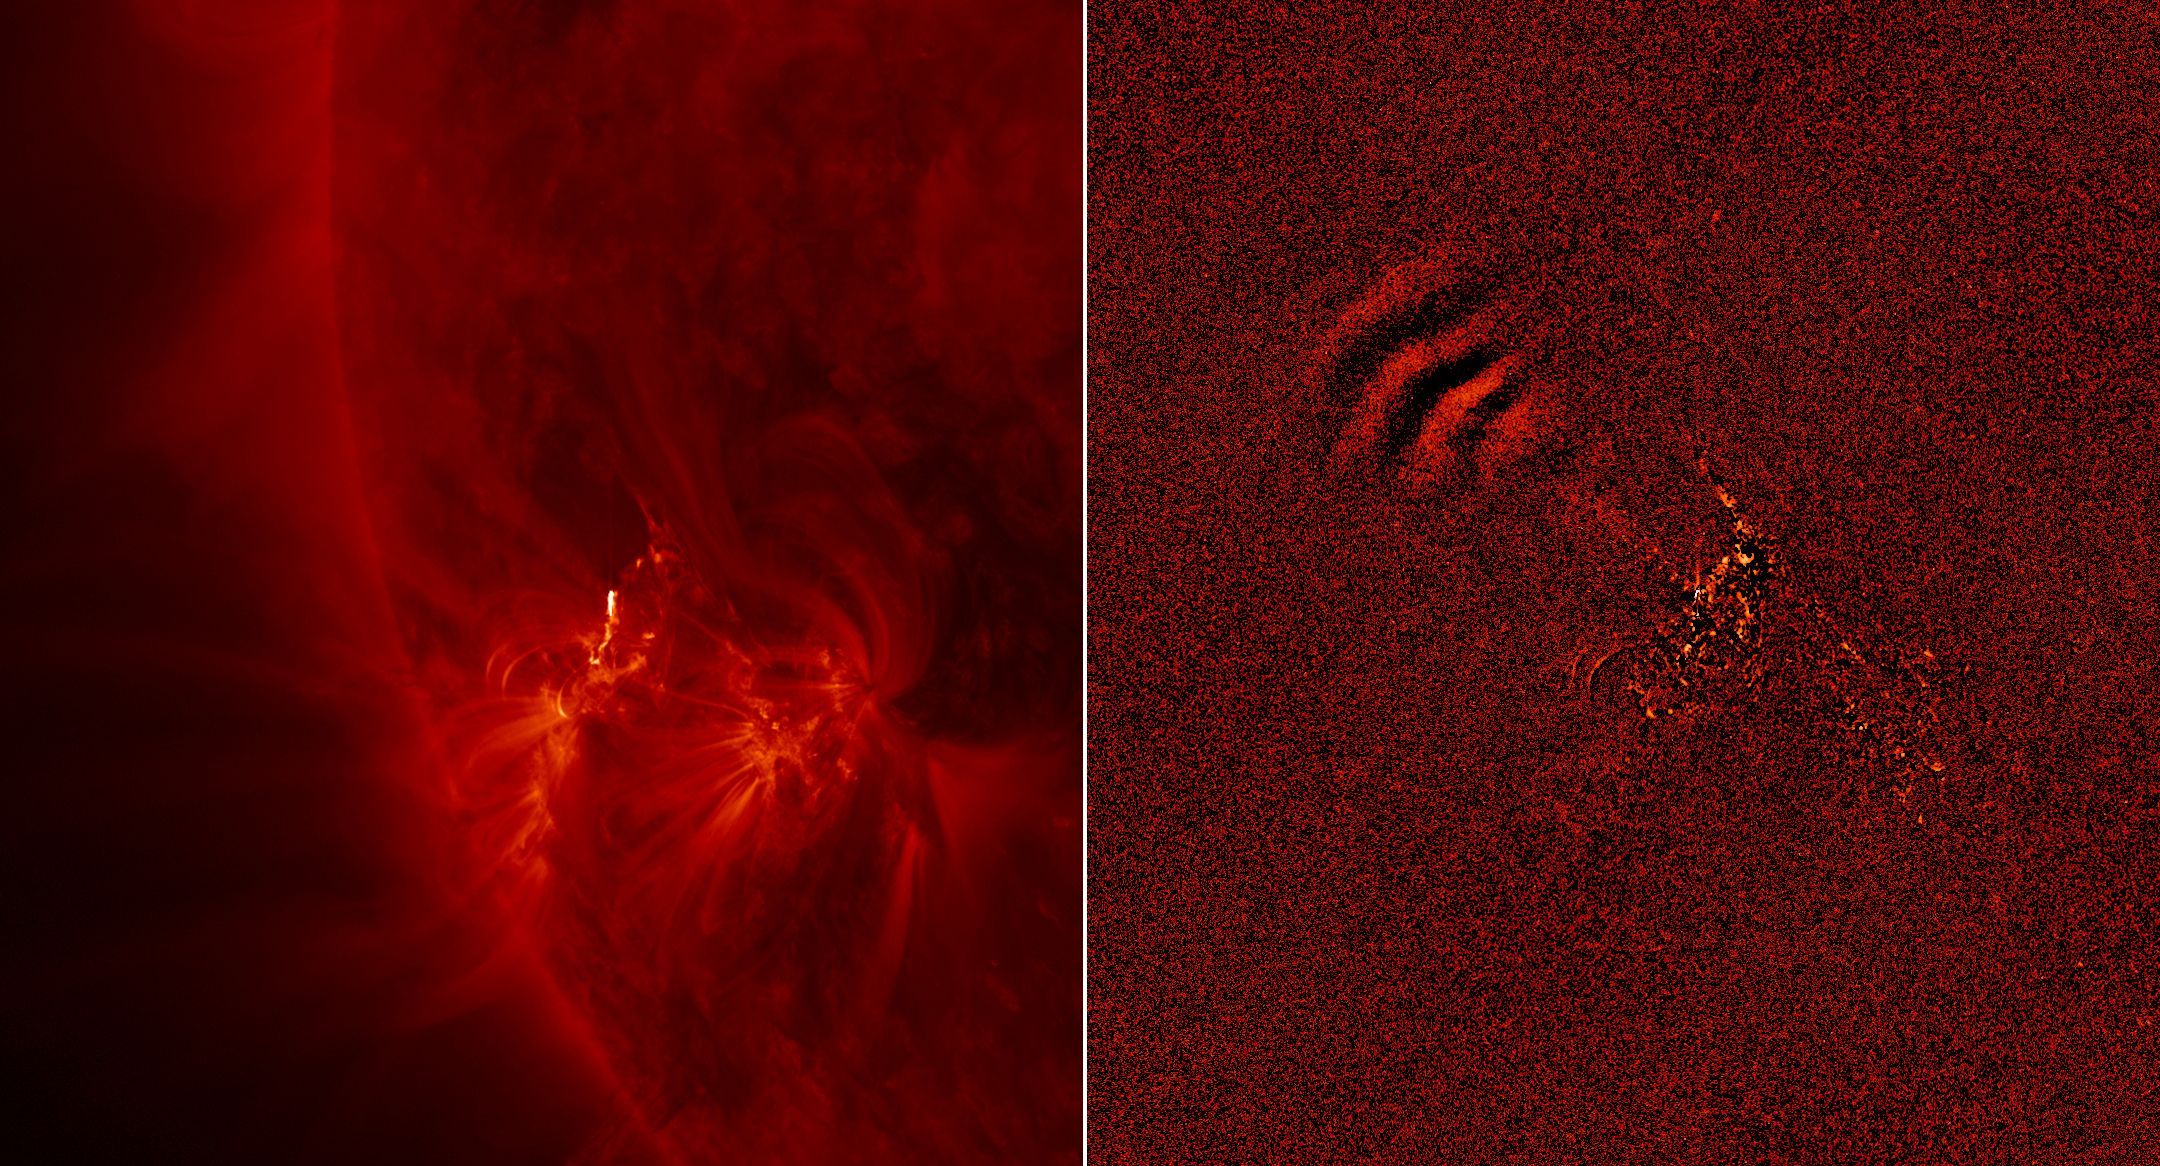 Snímek Slunce ze sondy SDO